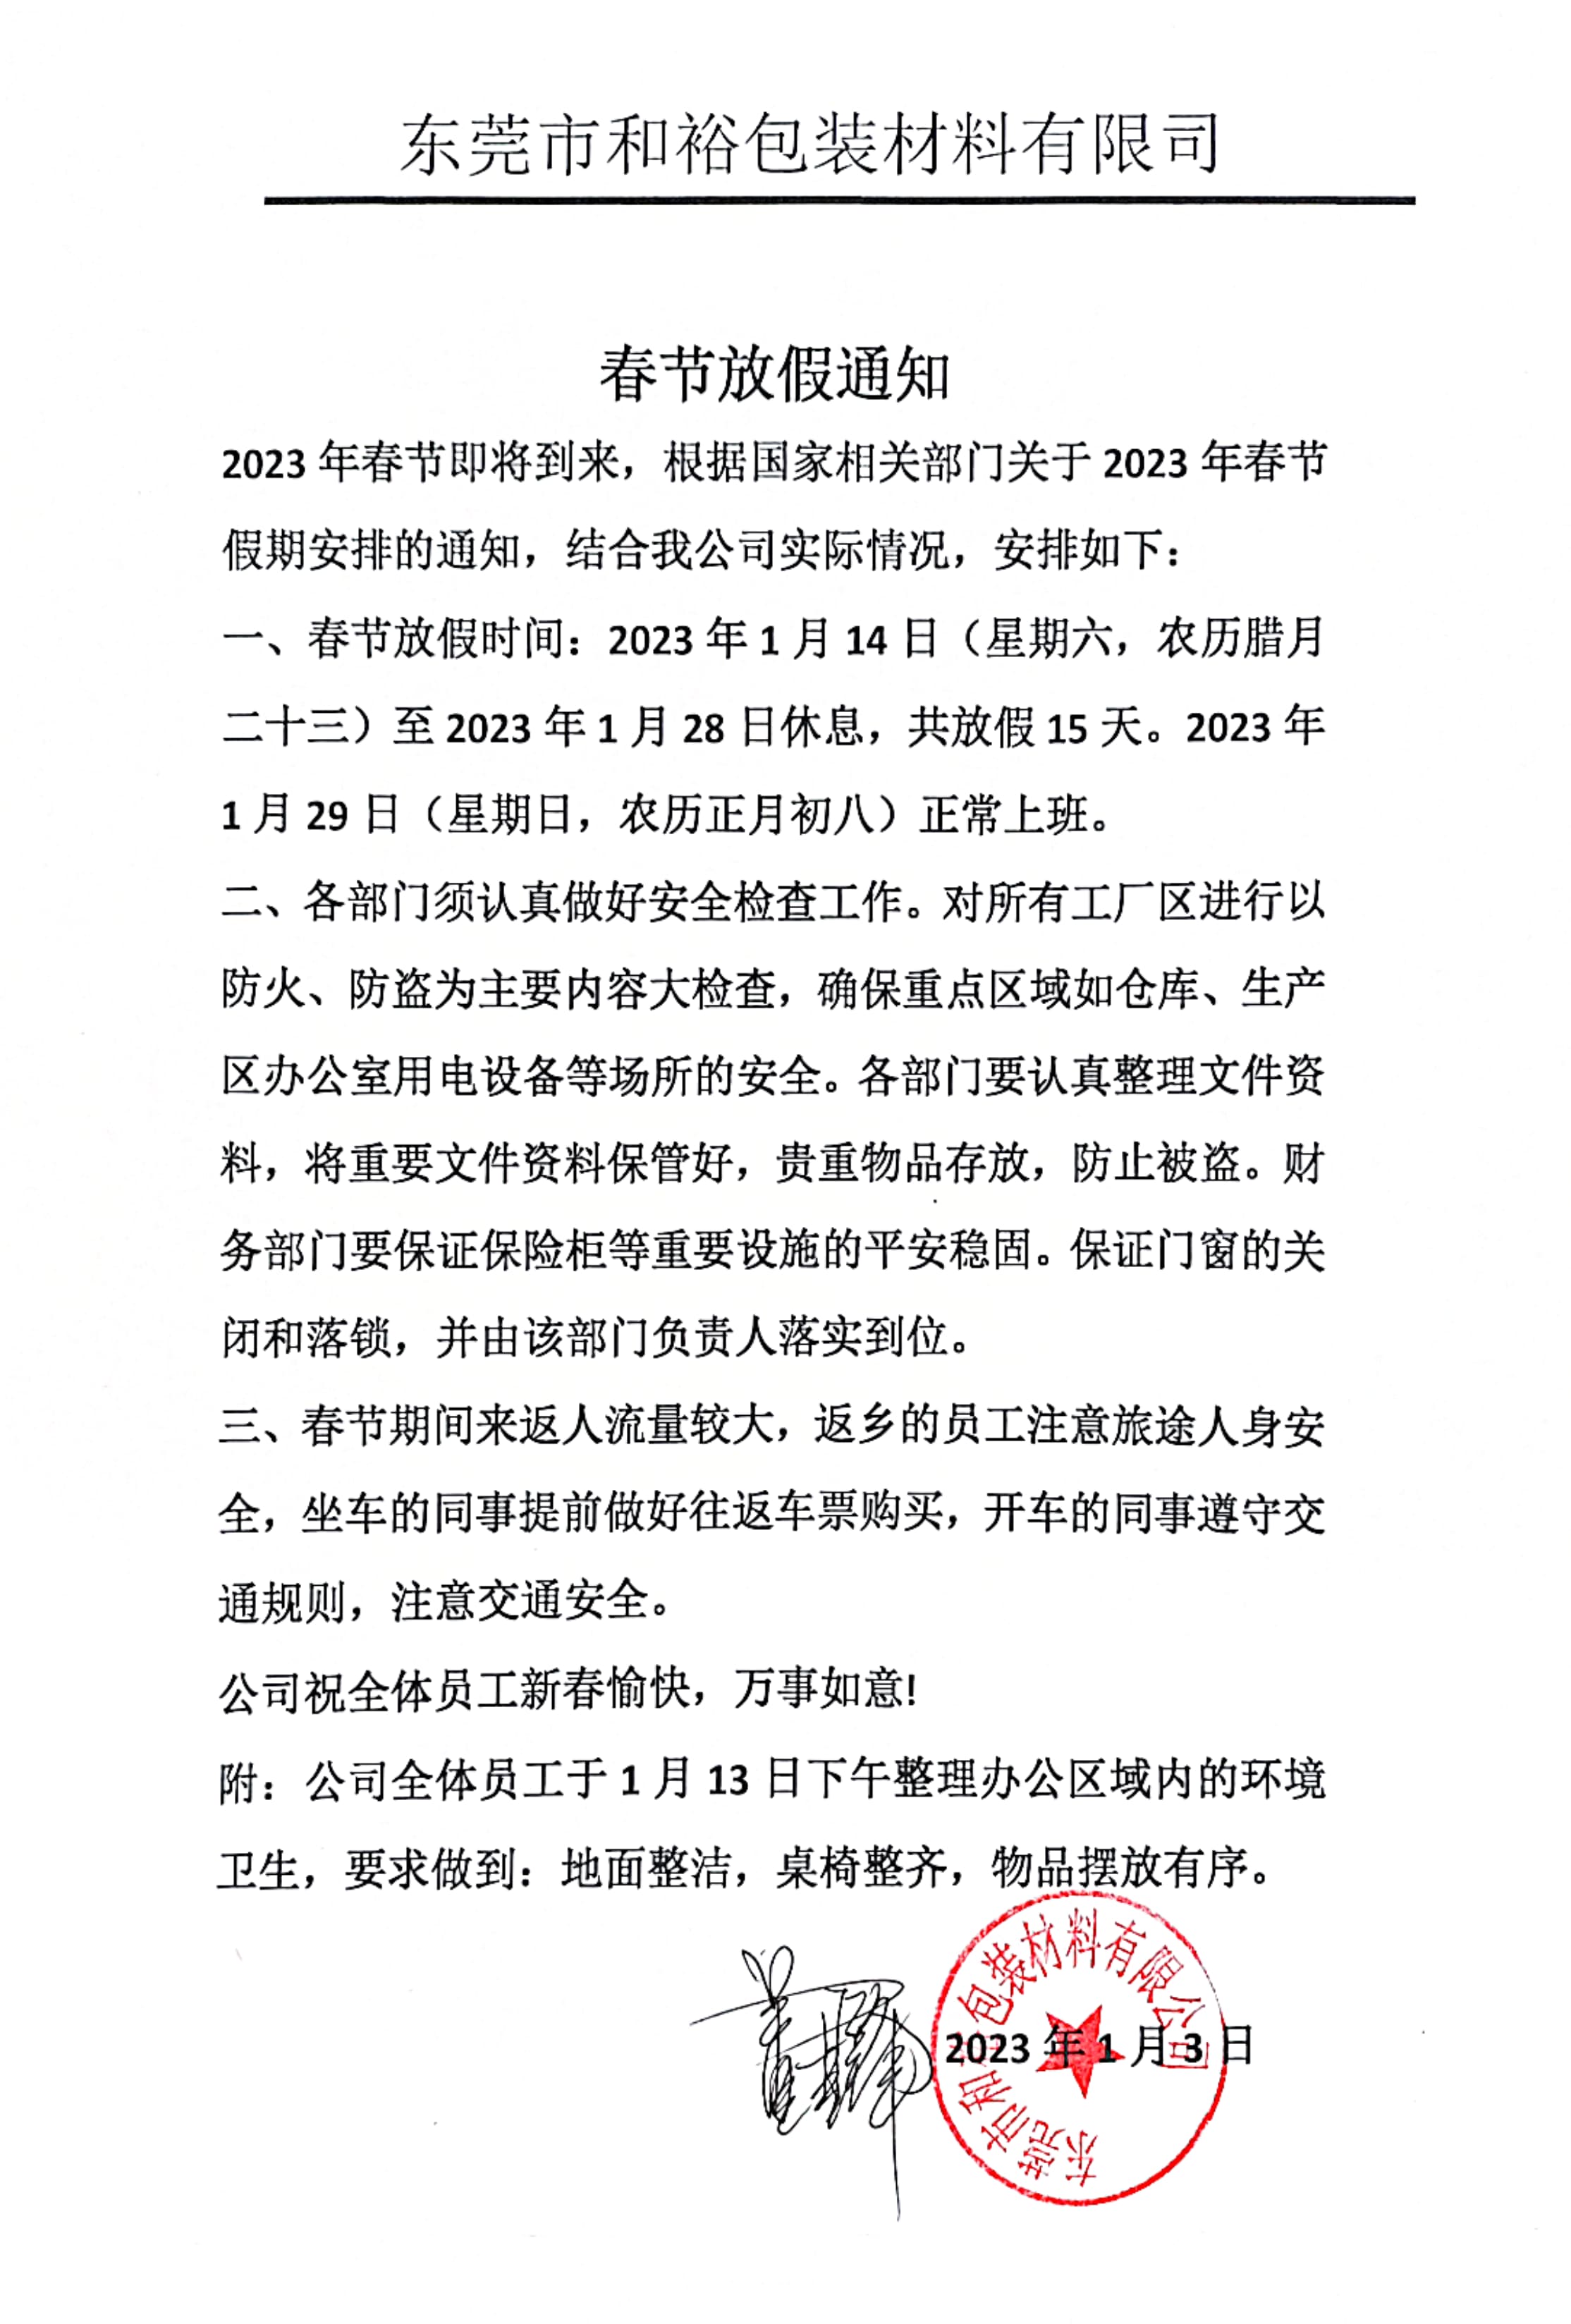 陇南市2023年和裕包装春节放假通知